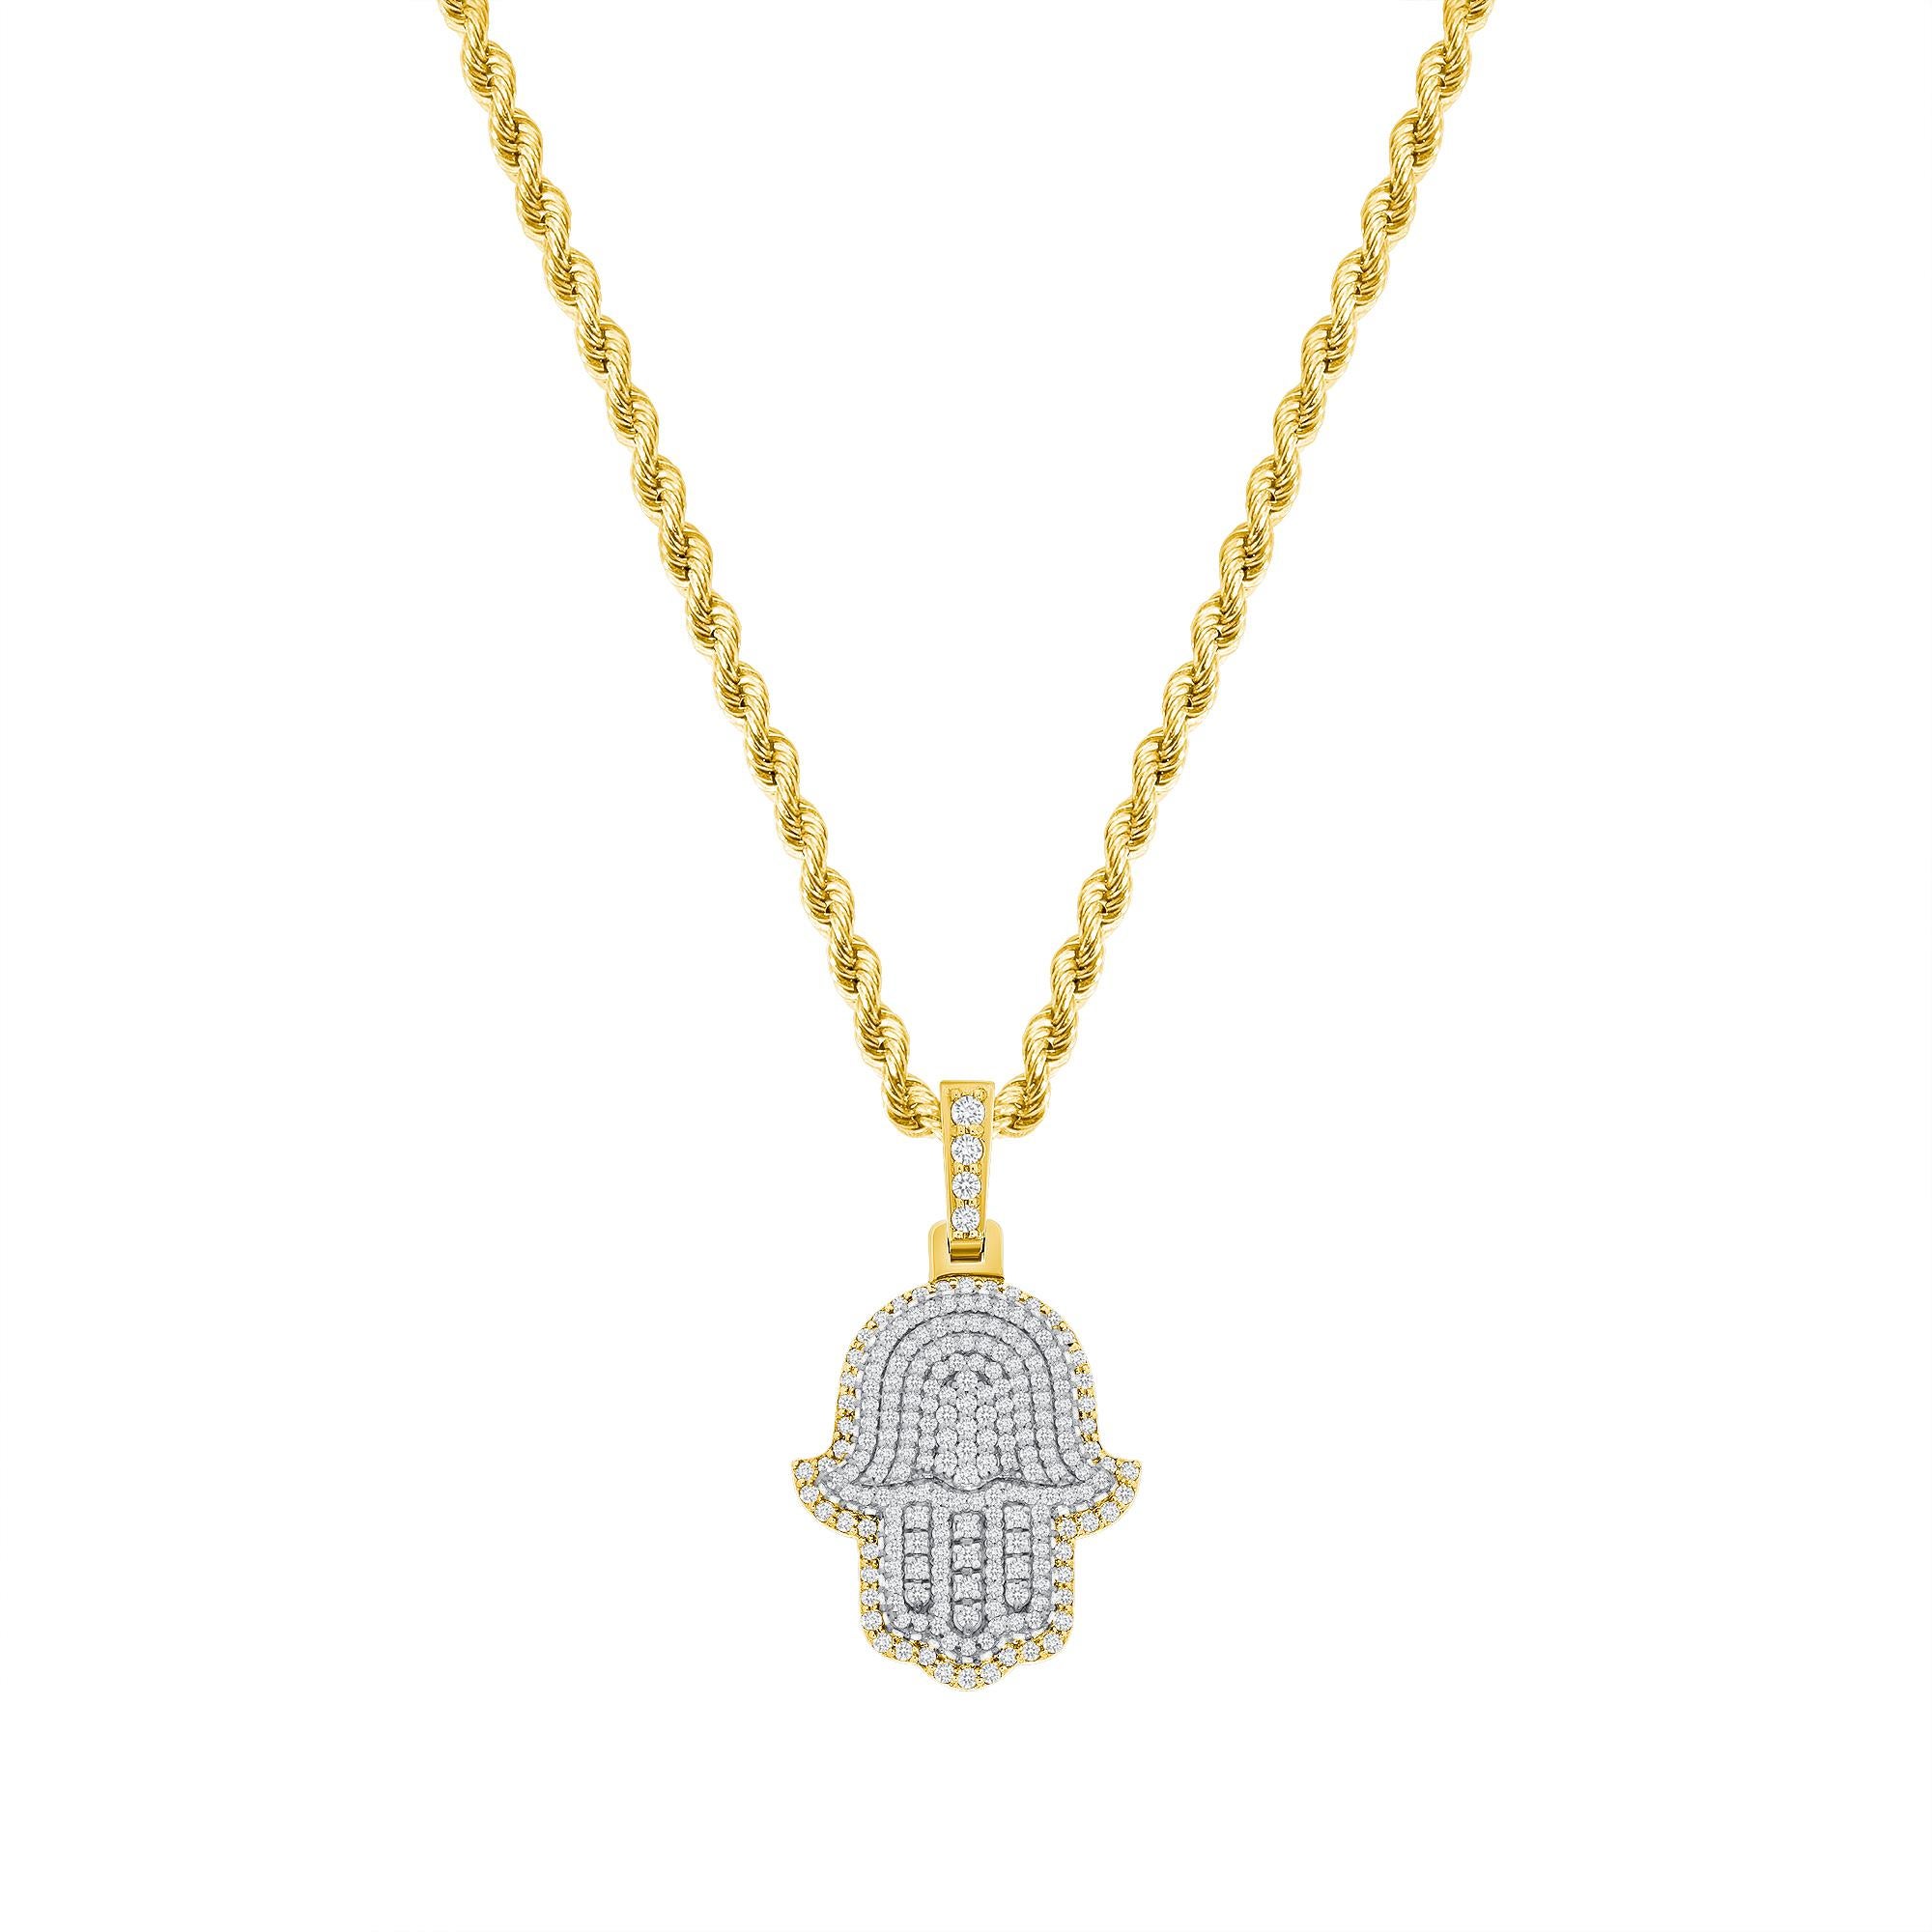 Diese Hamsa-Diamant-Halskette bietet sowohl einen spirituellen als auch einen modischen Trend-Look. 

Metall: 14k Gold
Diamant-Schliff: Rund
Diamant Karat gesamt: 2 Karat
Diamant Reinheit: VS
Farbe des Diamanten: F-G
Länge der Halskette: 20